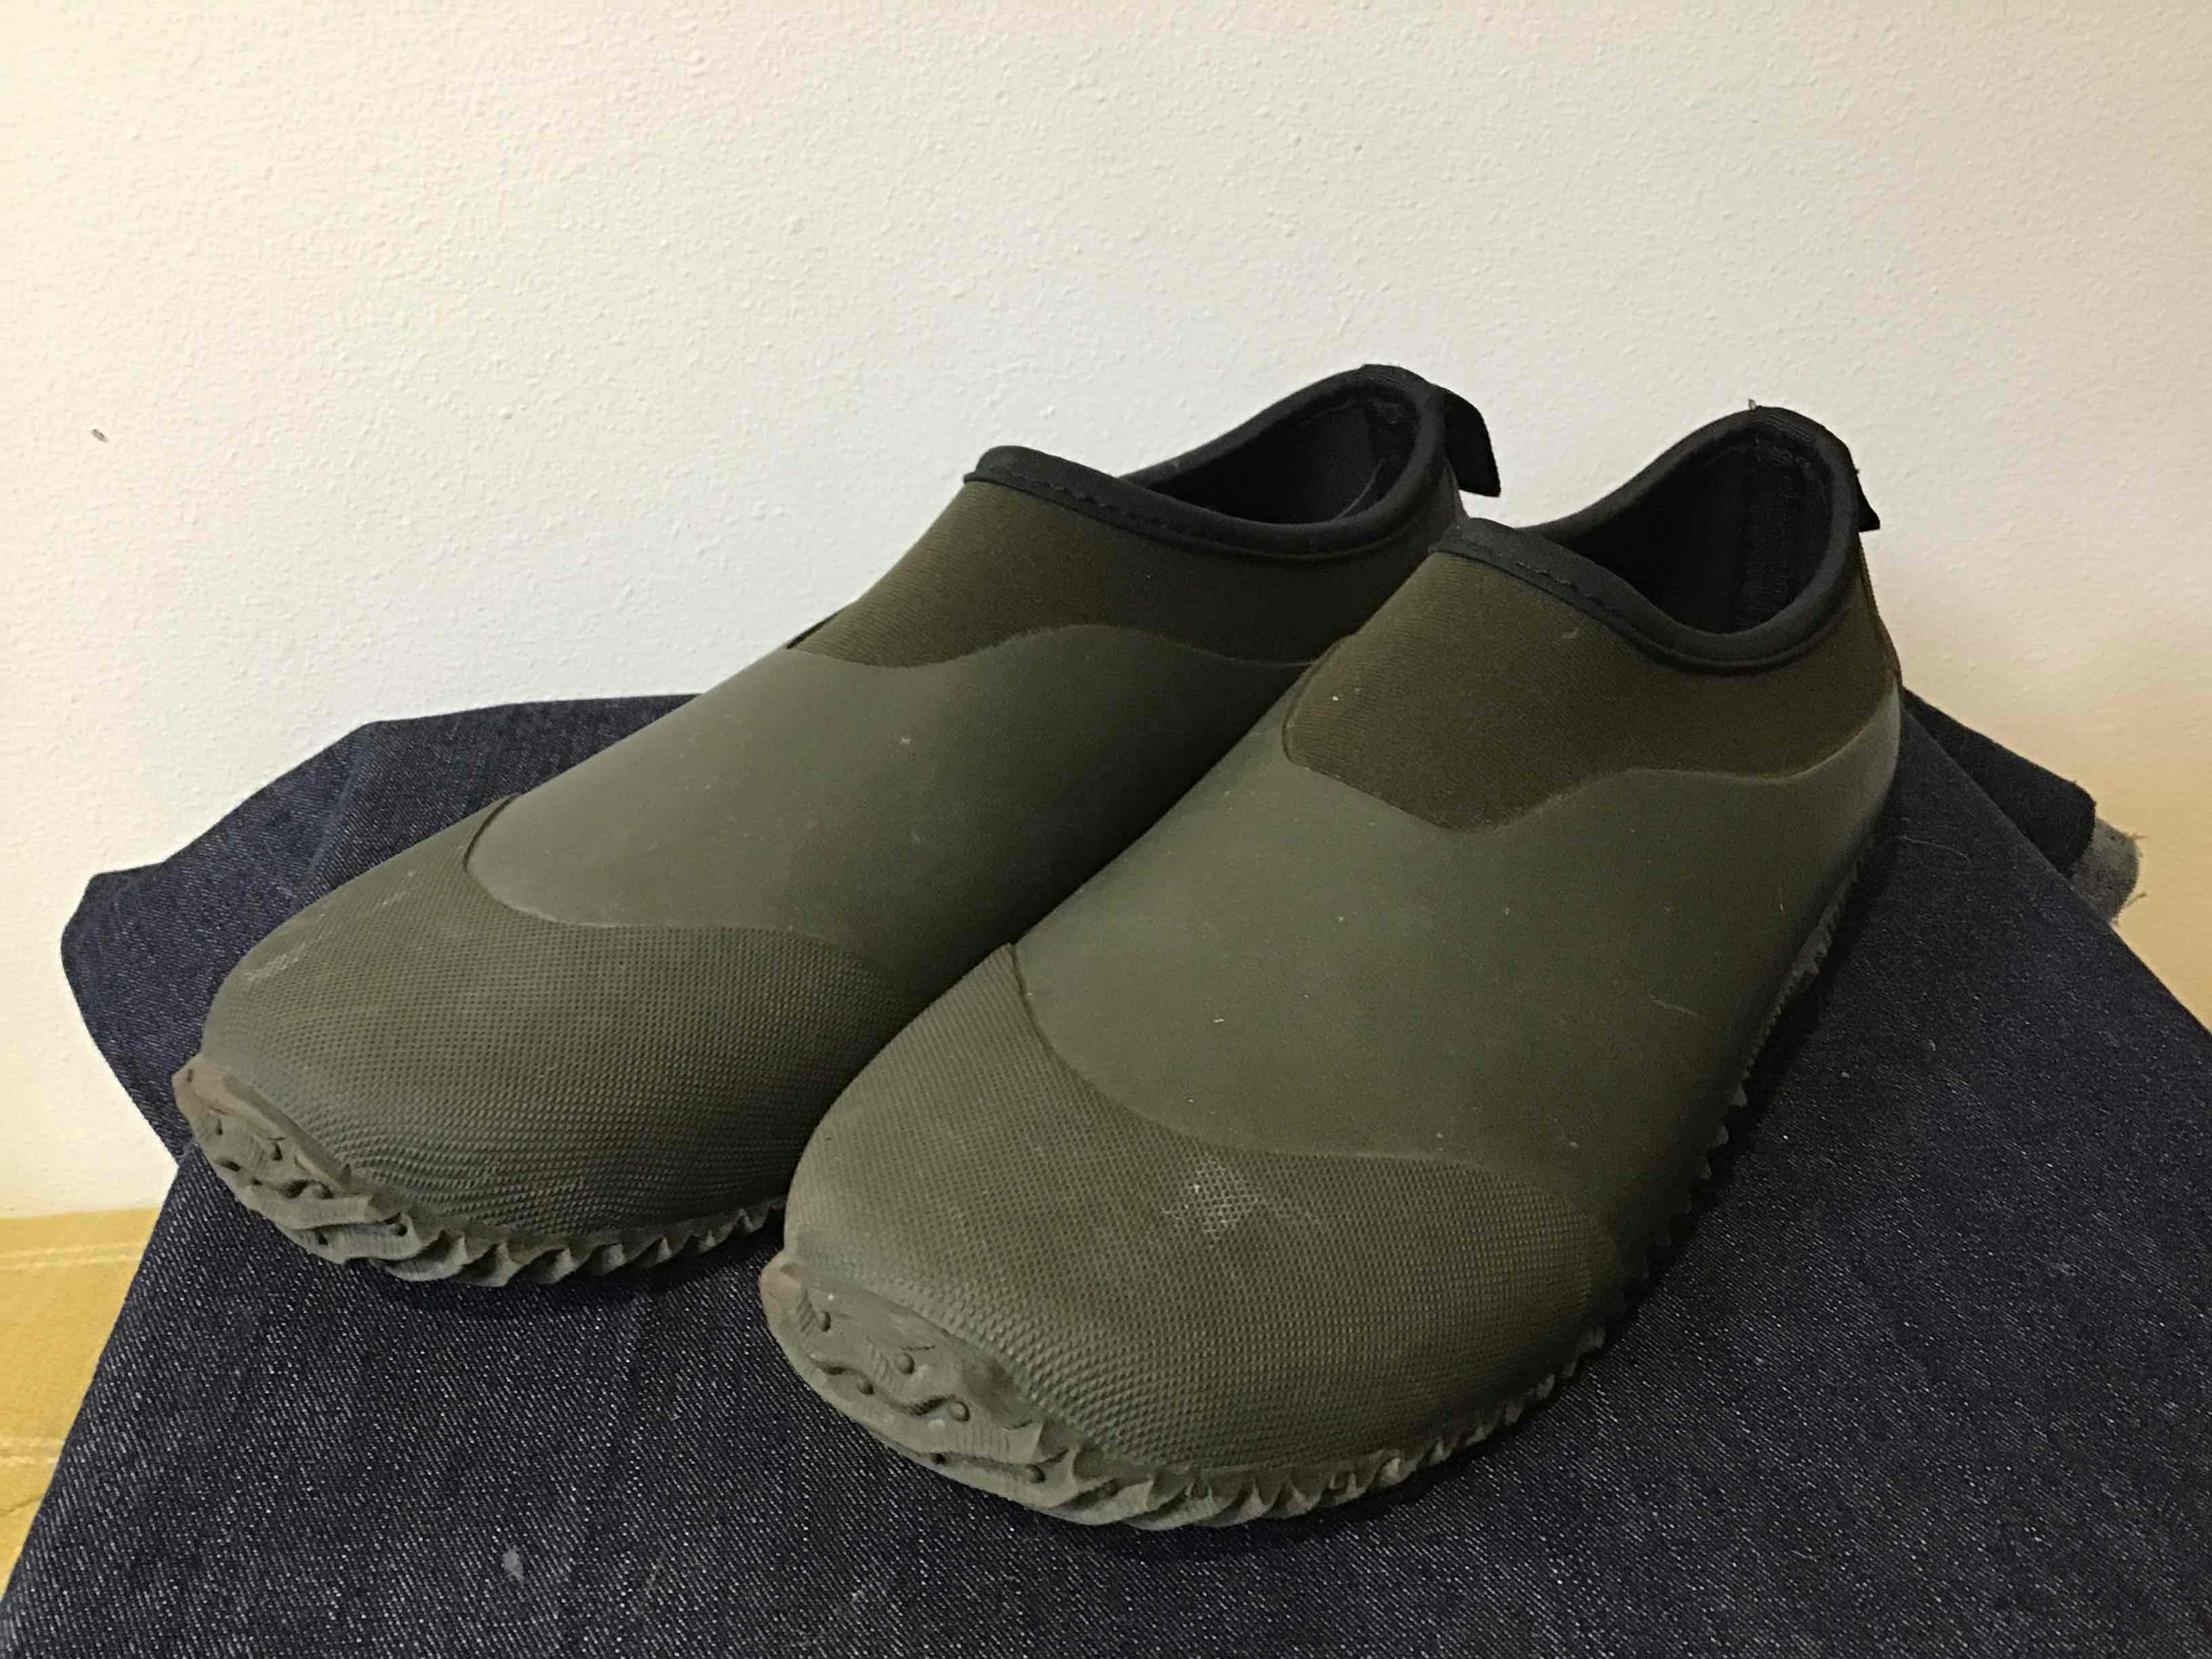 Waterproof Slip-On Shoes - Mens 10-10.5